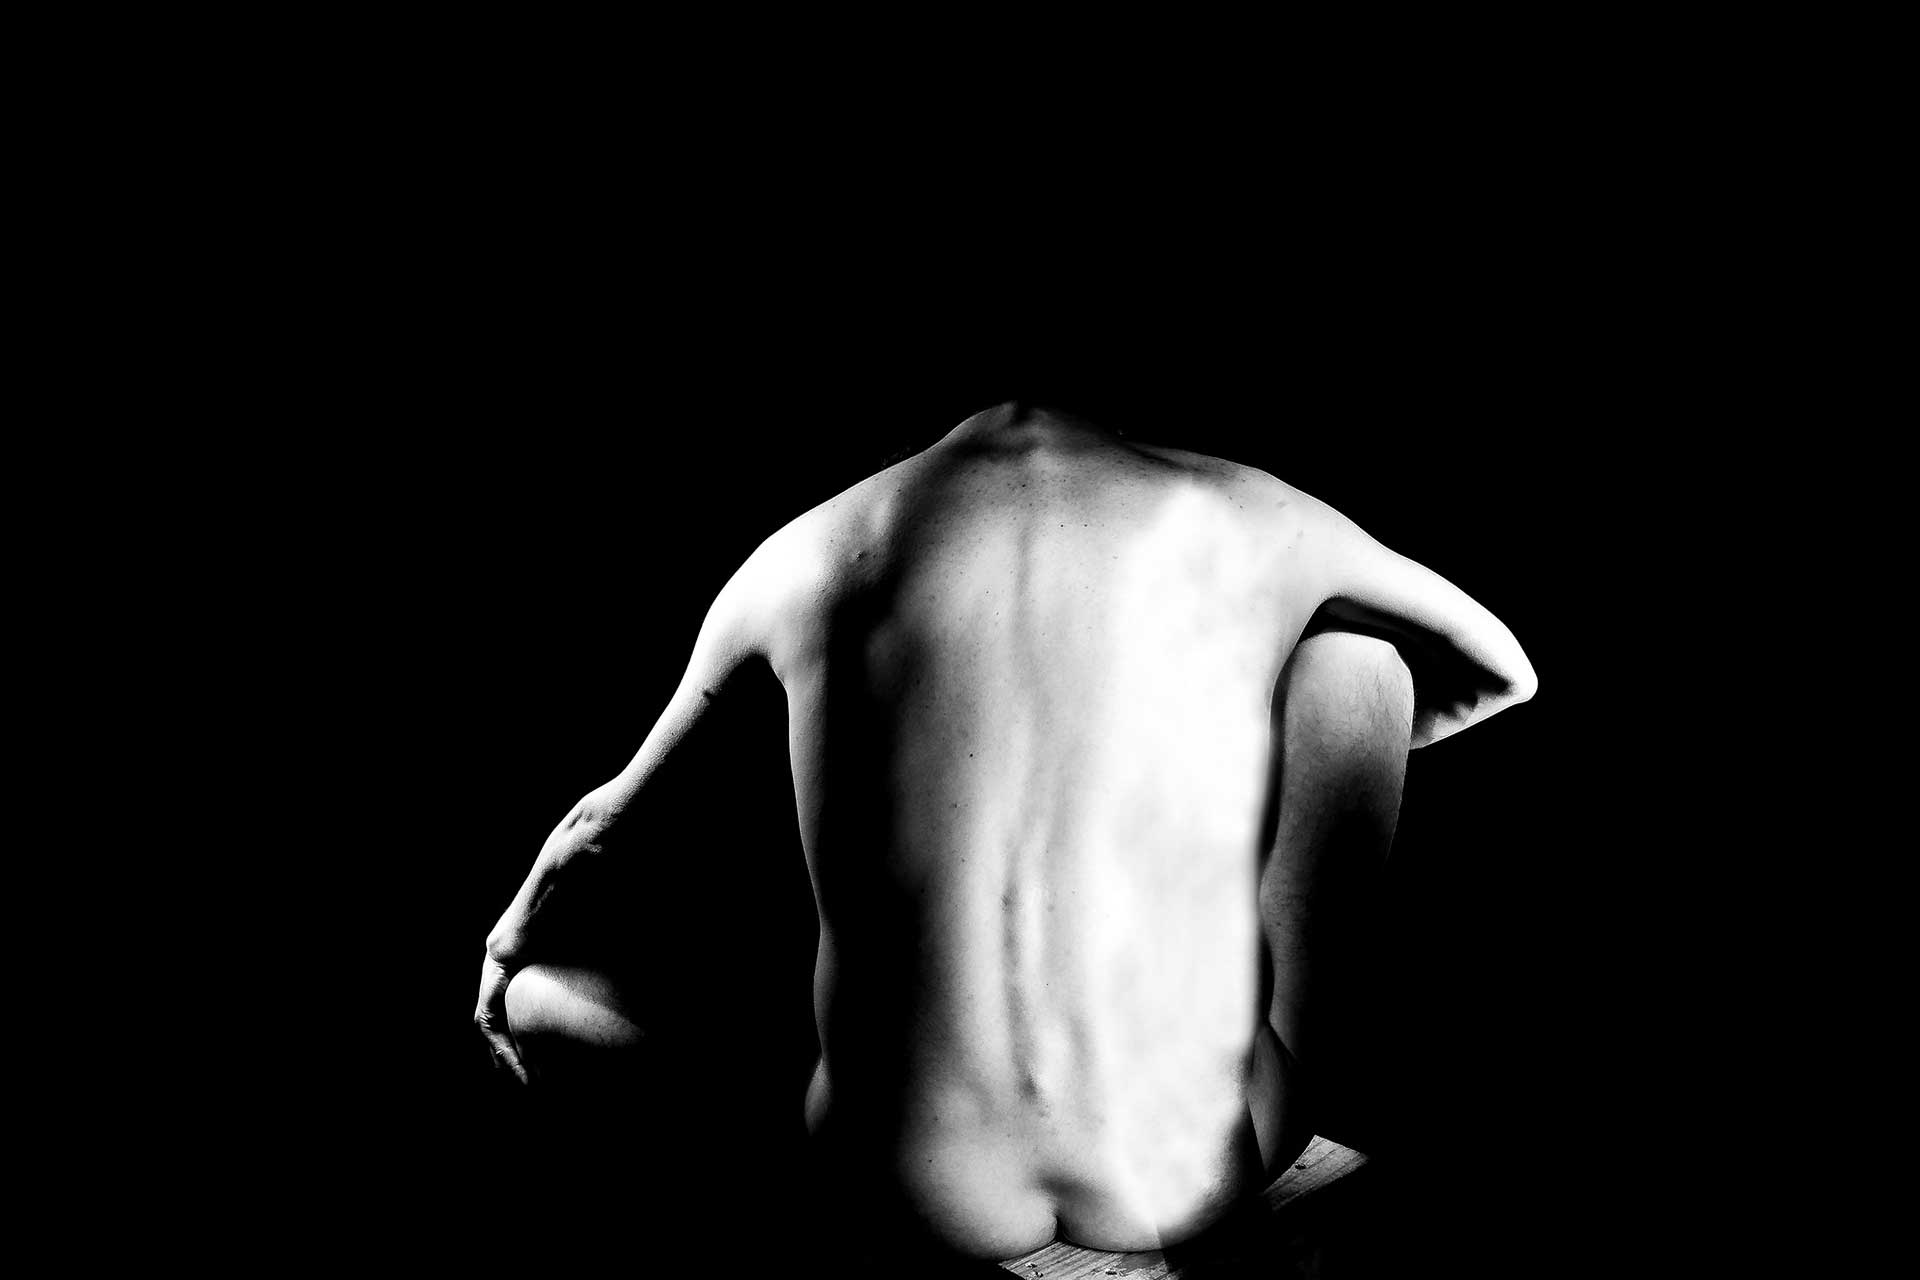 Fotografía, en blanco y negro, de un cuerpo iluminado en la oscuridad